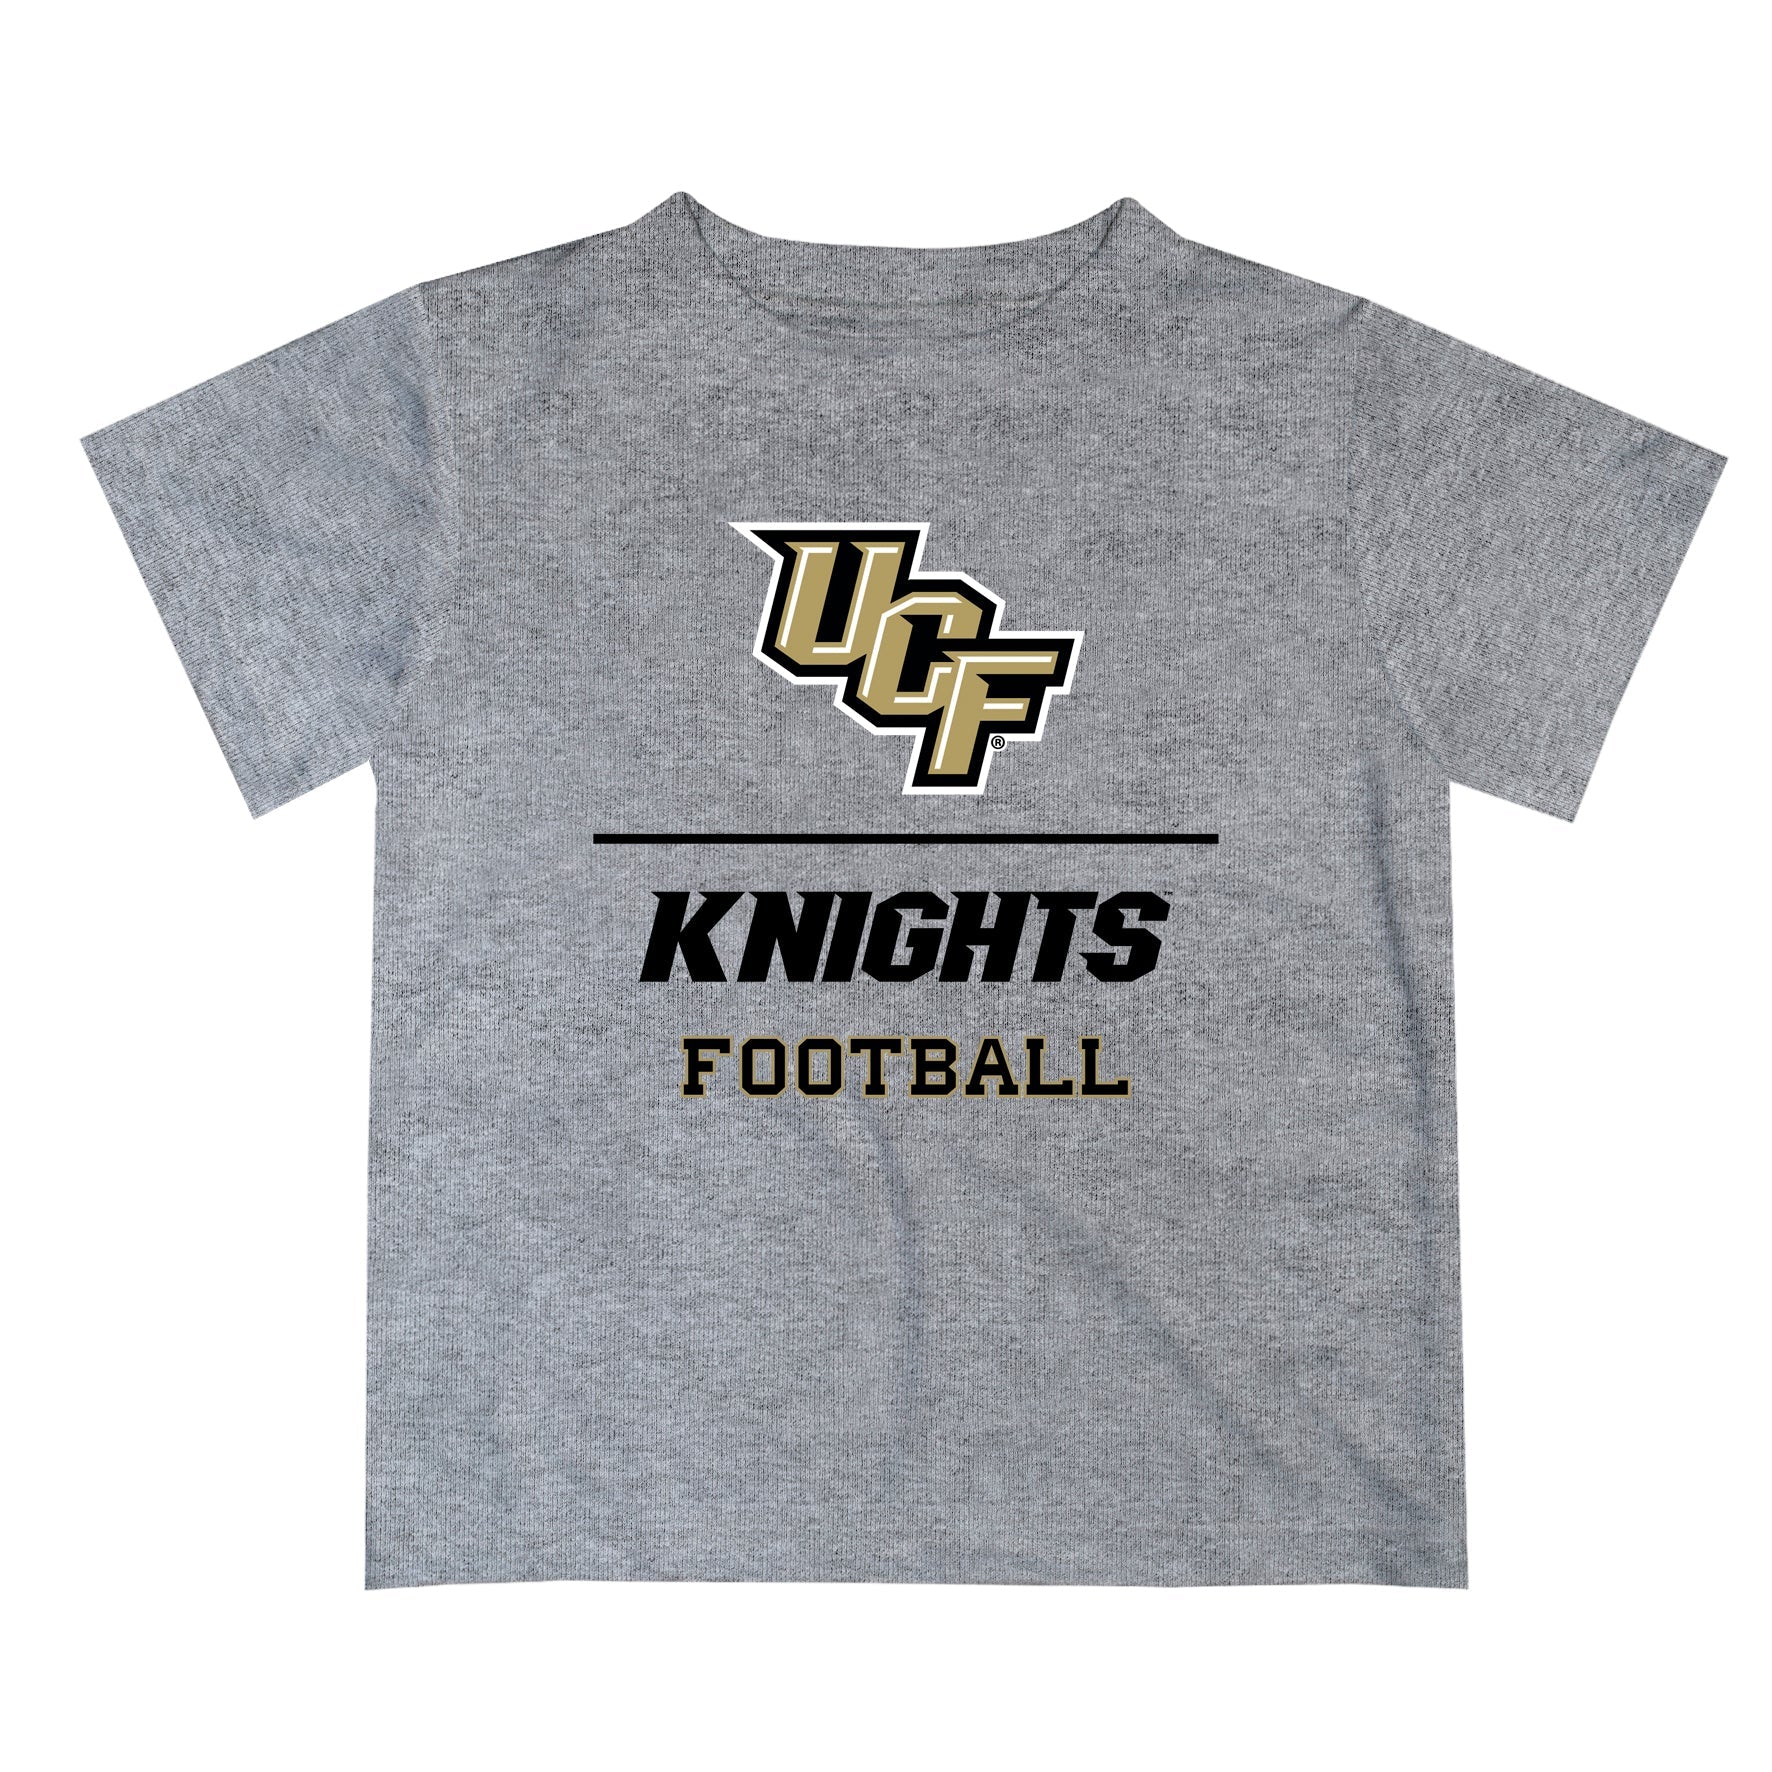 UCF Knights Vive La Fete Football V1 Gray Short Sleeve Tee Shirt